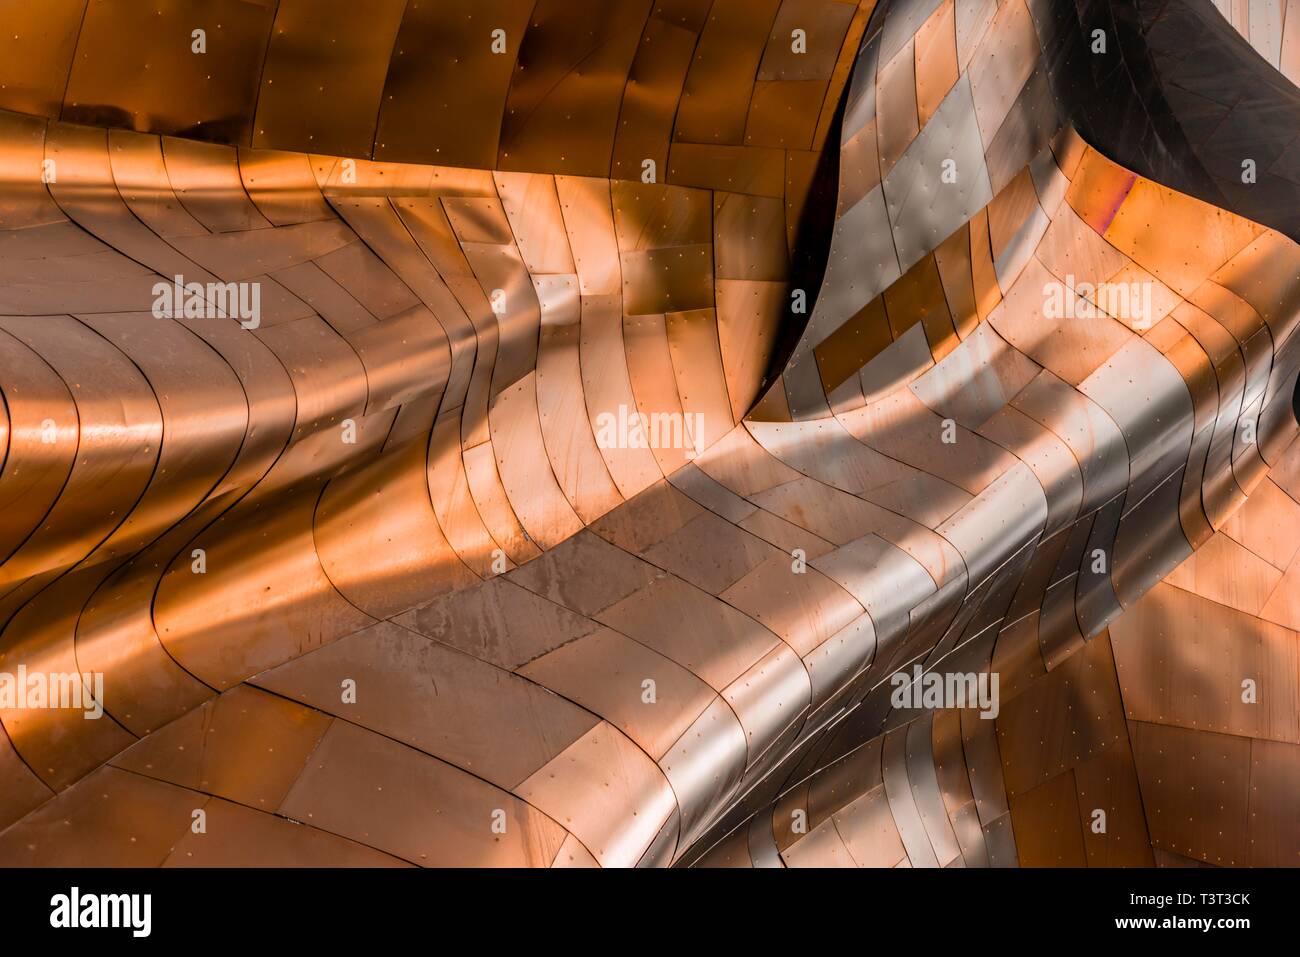 Façade bombée de couleur cuivre du Musée de la culture pop, RPBB, détail, l'architecture moderne, l'architecte Frank Gehry, Washington, USA Banque D'Images